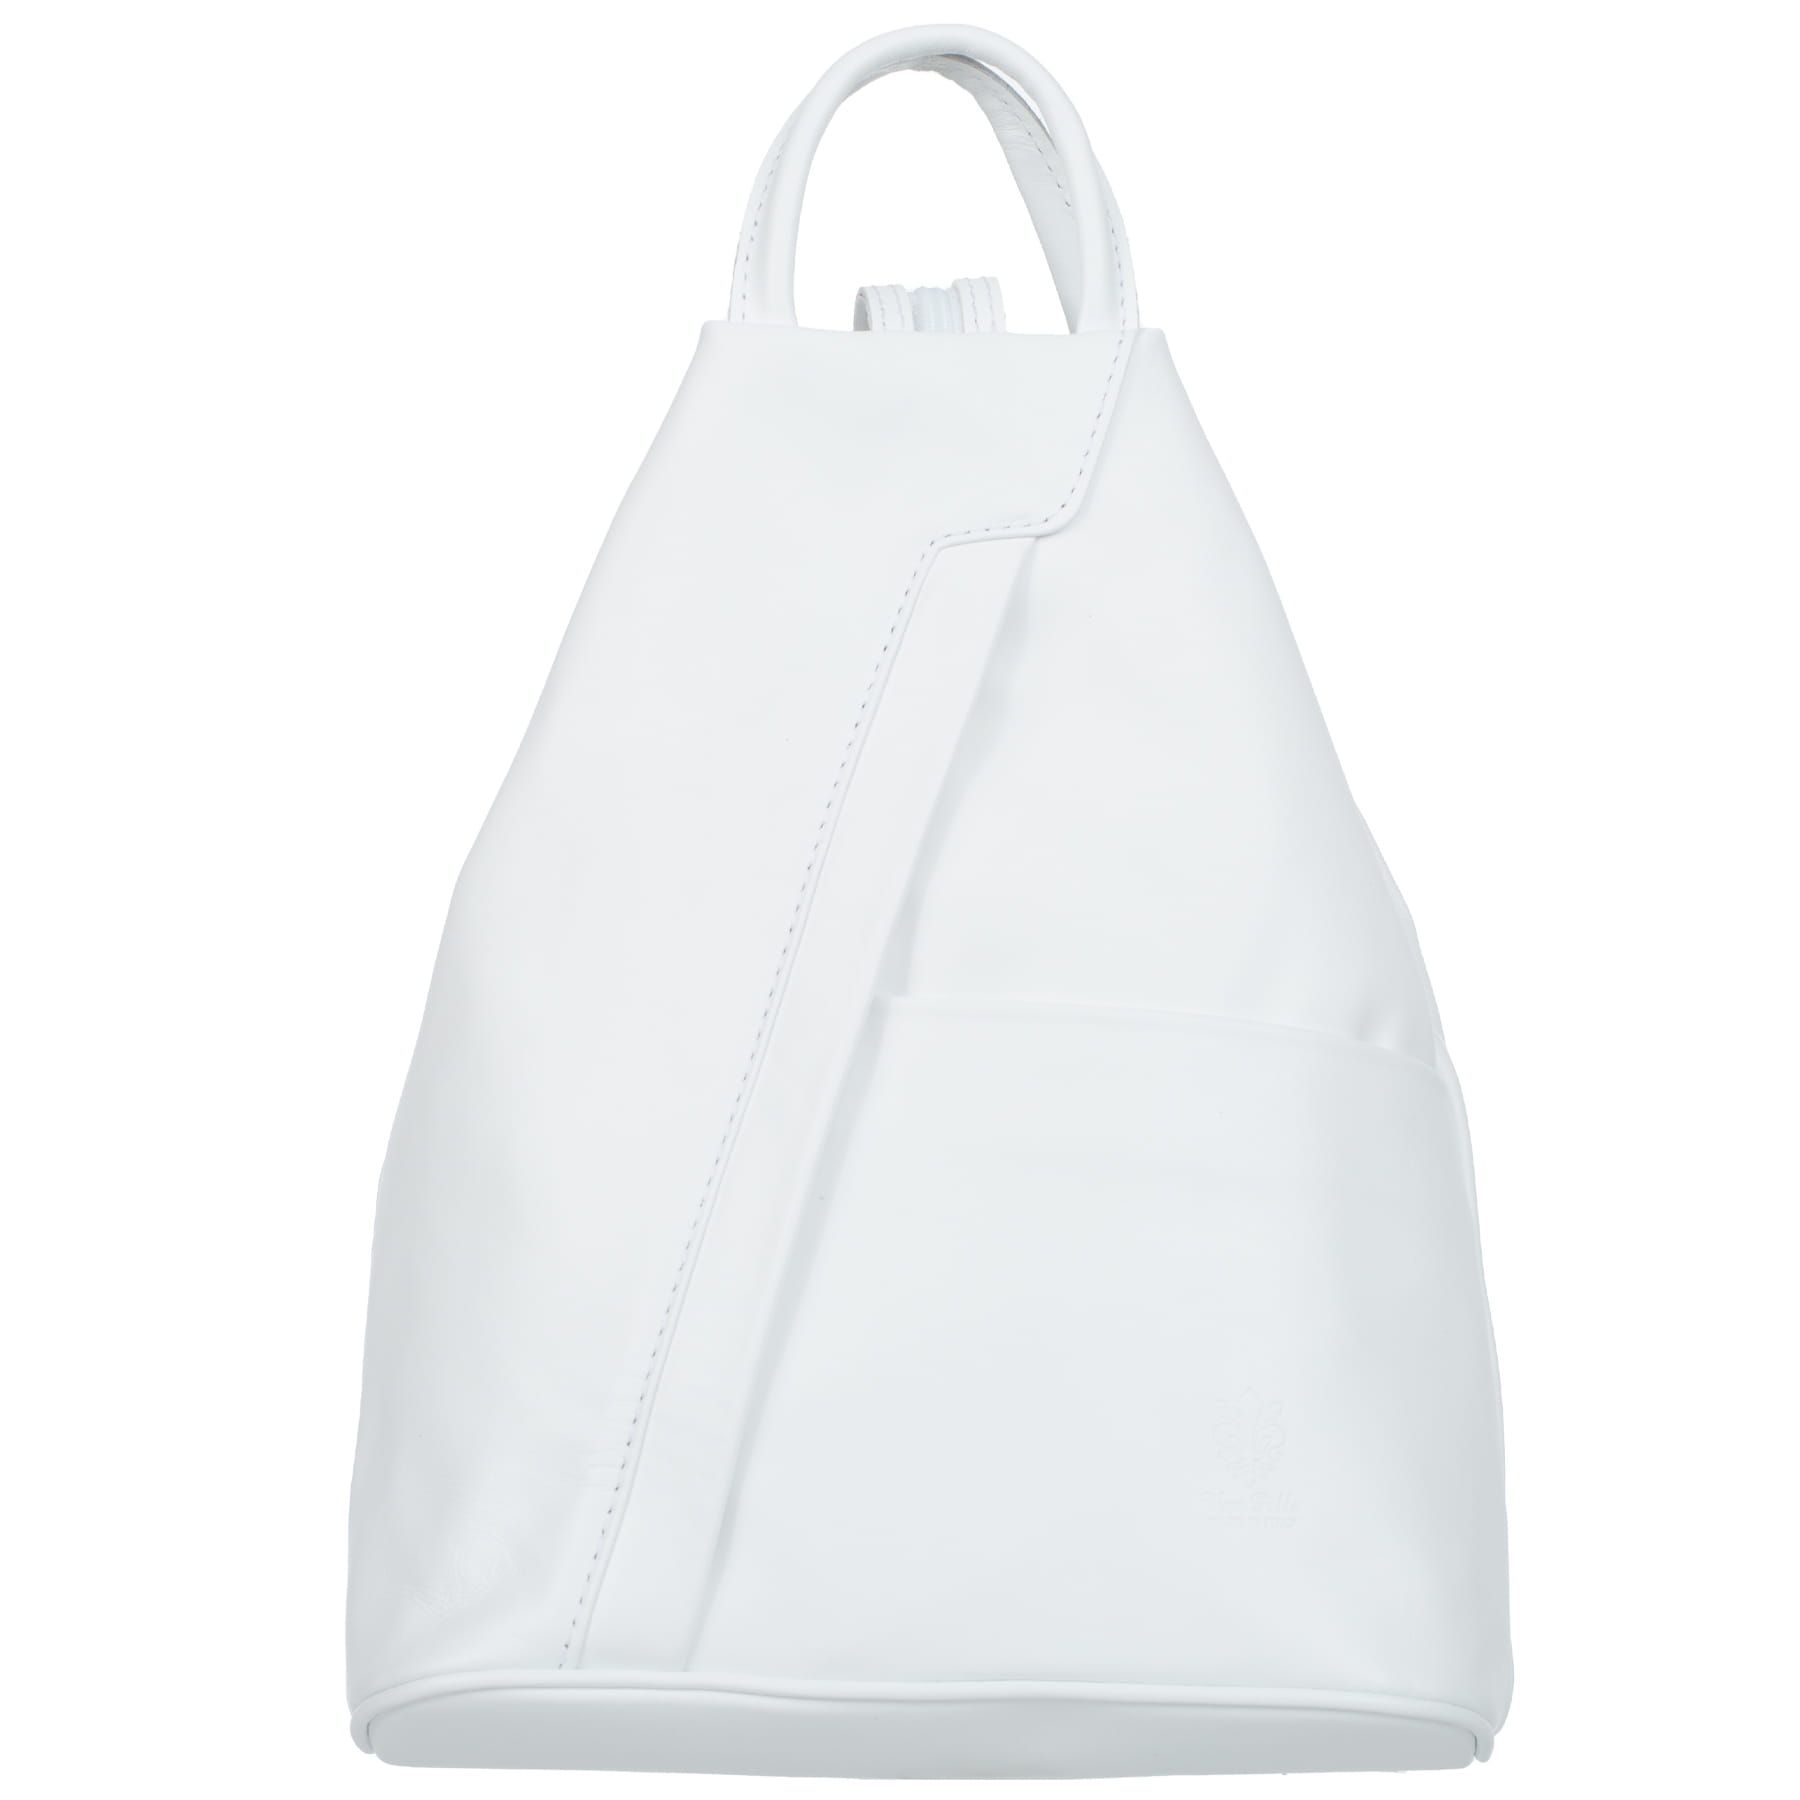 VERA PELLE plecak skórzany licowy elegancki trójkątny V520 biały